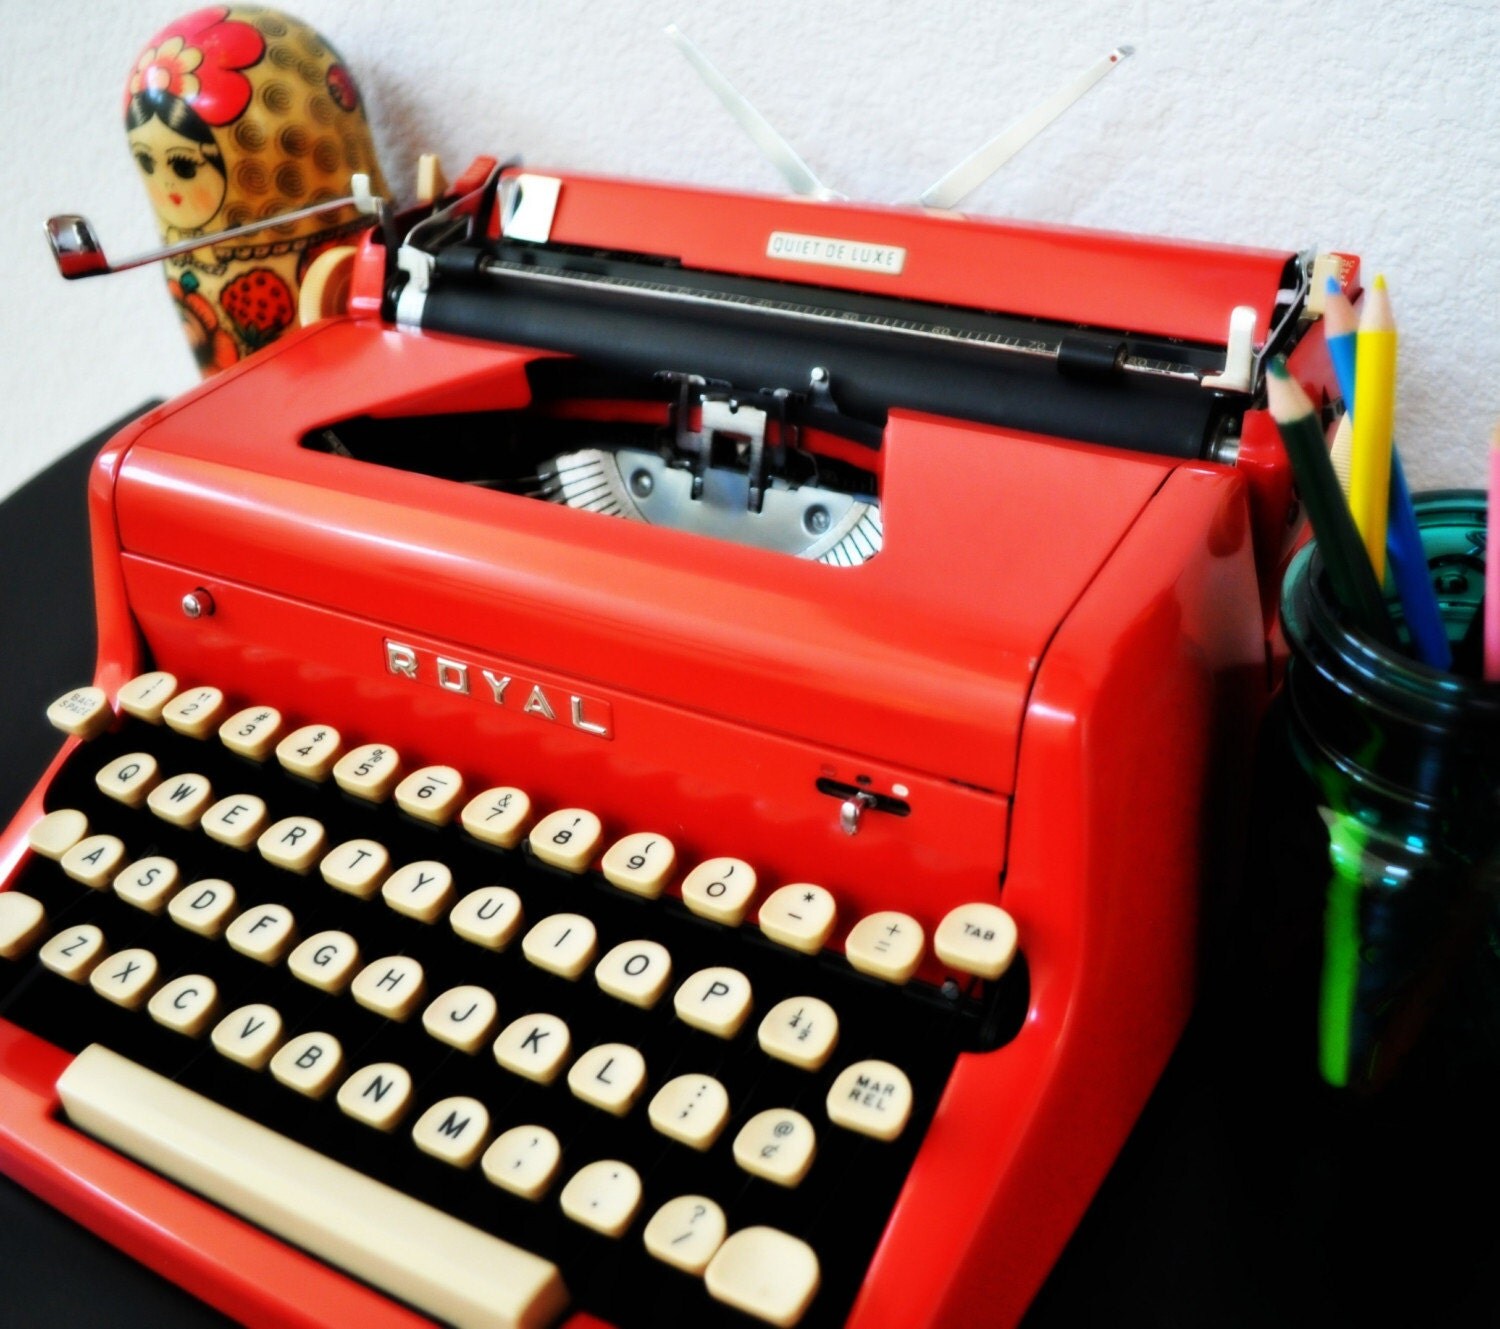 royal deluxe typewriter